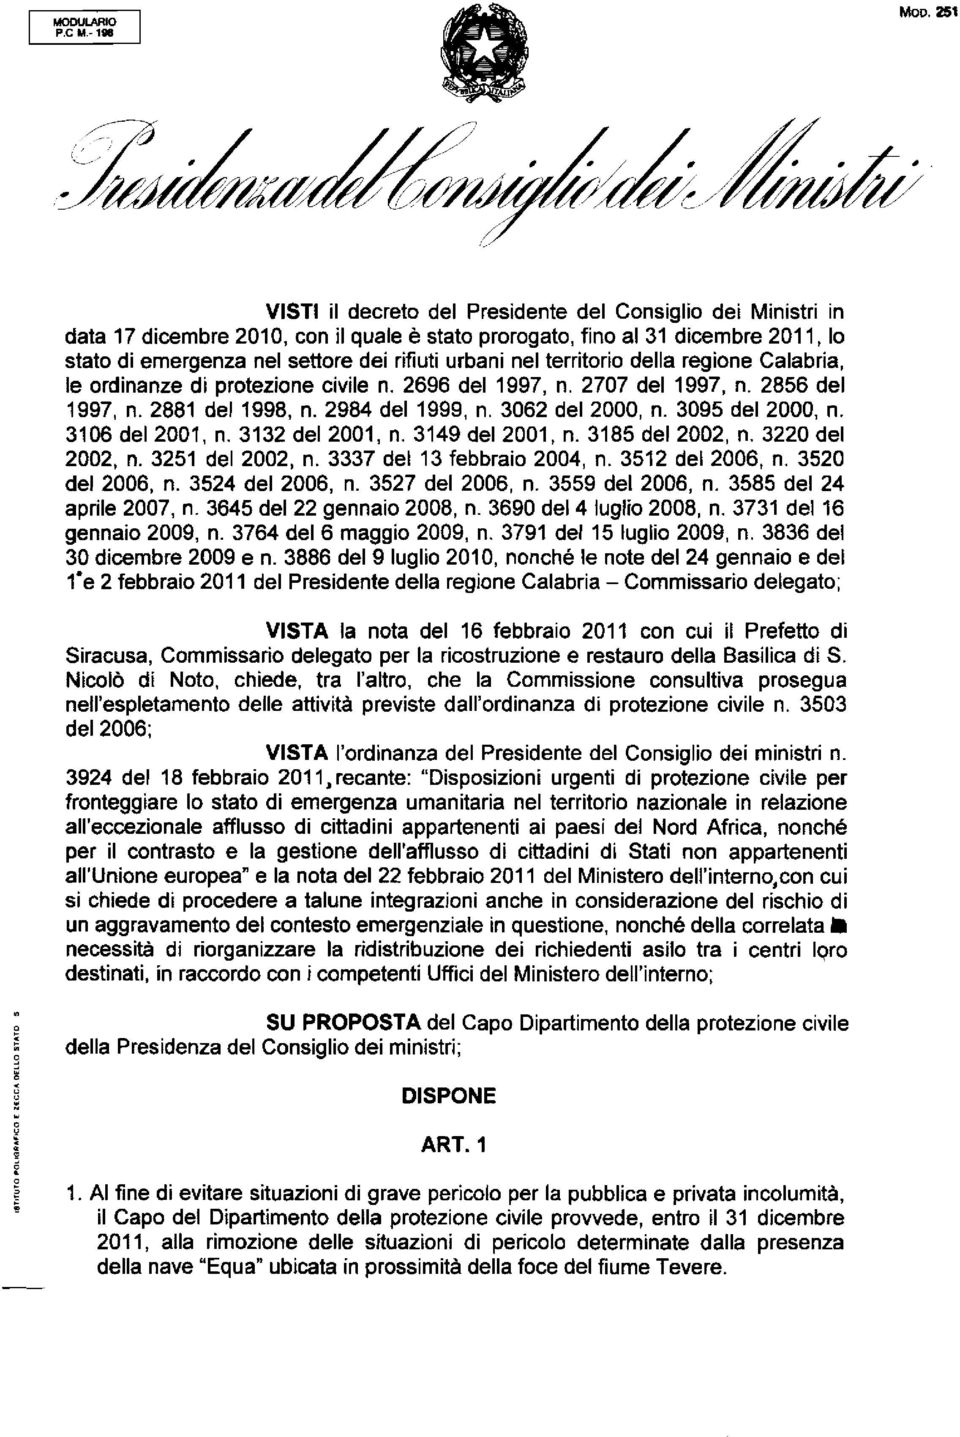 rifiuti urbani nel territorio della regione Calabria, le ordinanze di protezione civile n. 2696 del 1997, n. 2707 del 1997, n. 2856 del 1997, n. 2881 del 1998, n. 2984 del 1999, n. 3062 del 2000, n.